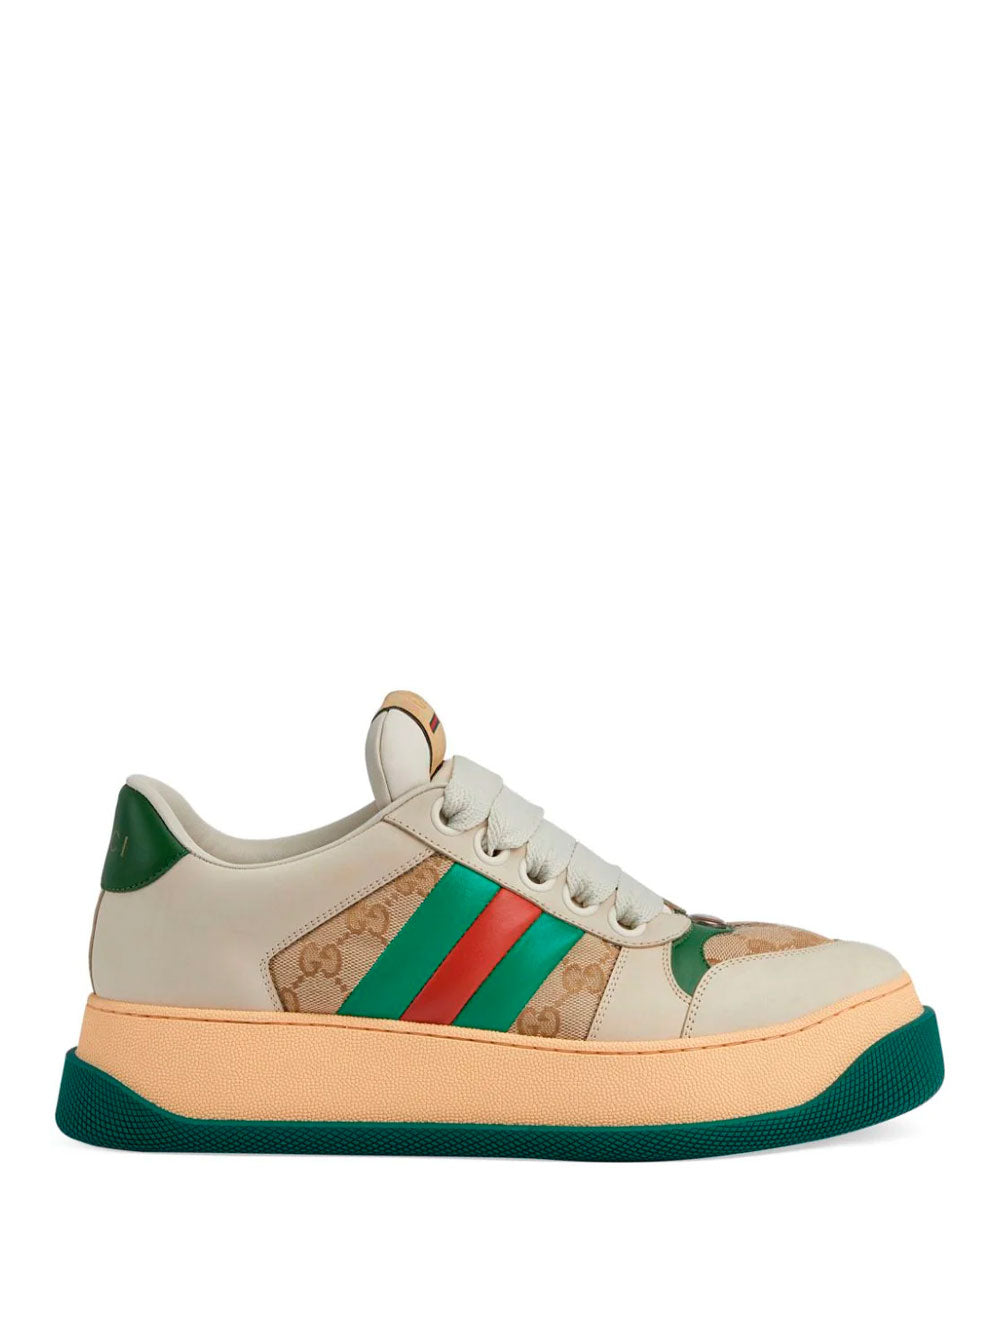 Screener sneakers | Gucci | OTTODISANPIETRO